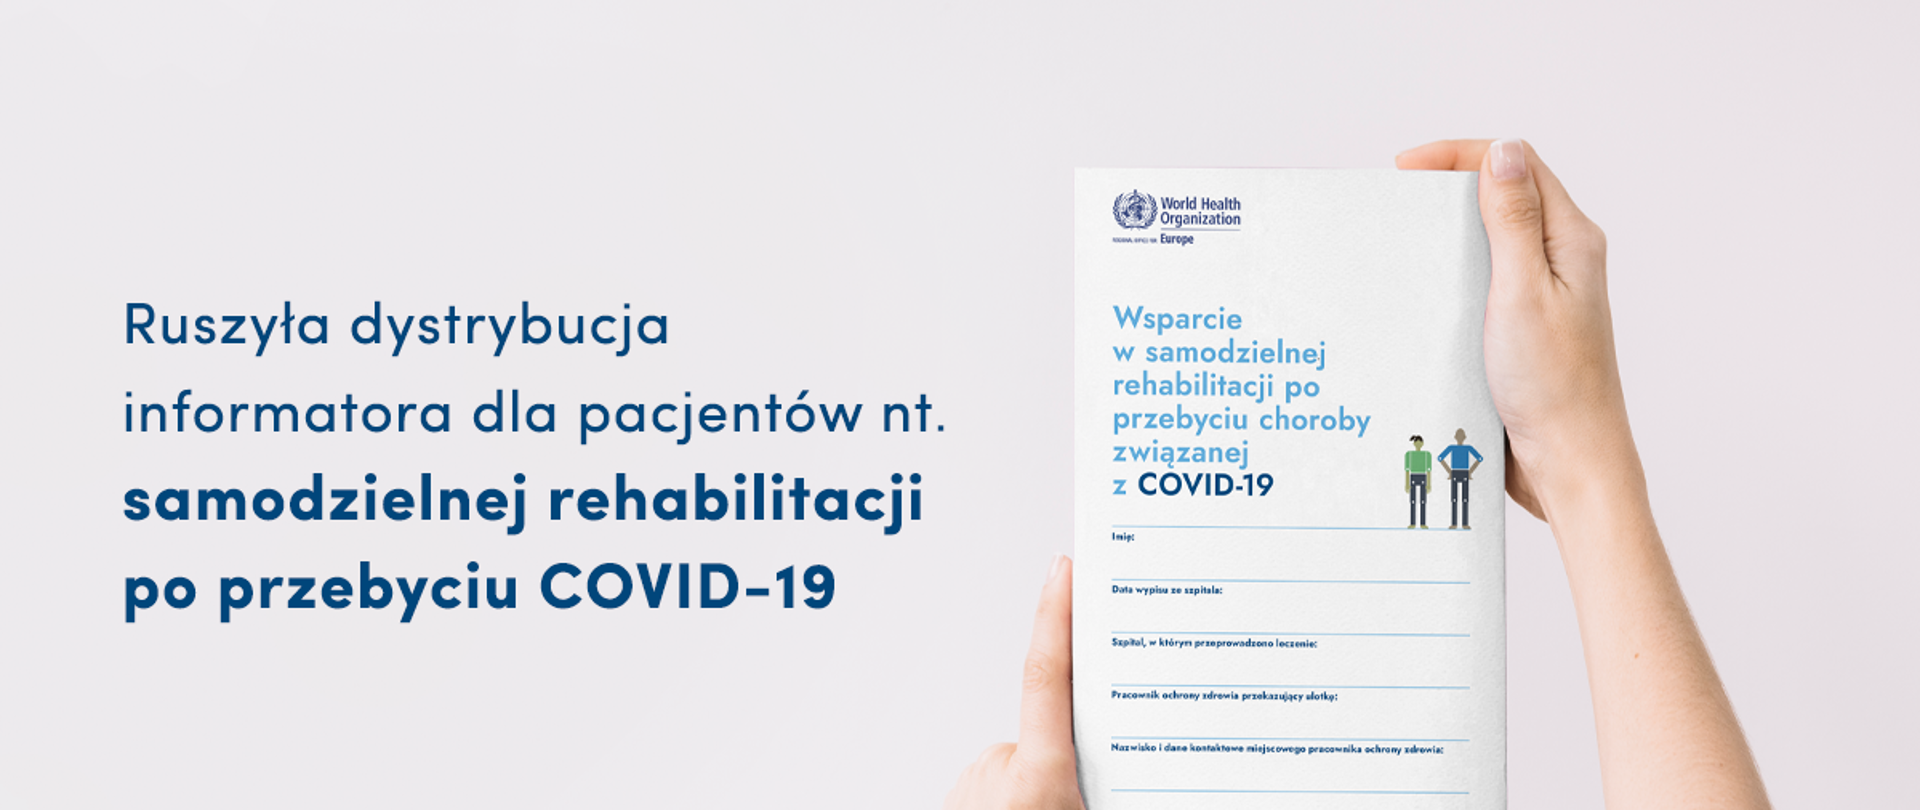 Na zdjęciu dwie ręce trzymają broszurę pt. "Wsparcie w samodzielnej rehabilitacji po przebyciu choroby związanej z COVID-19". Obok granatowy napis: ruszyła dystrybucja informatora dla pacjentów nt. samodzielnej rehabilitacji po przebyciu COVID-19.